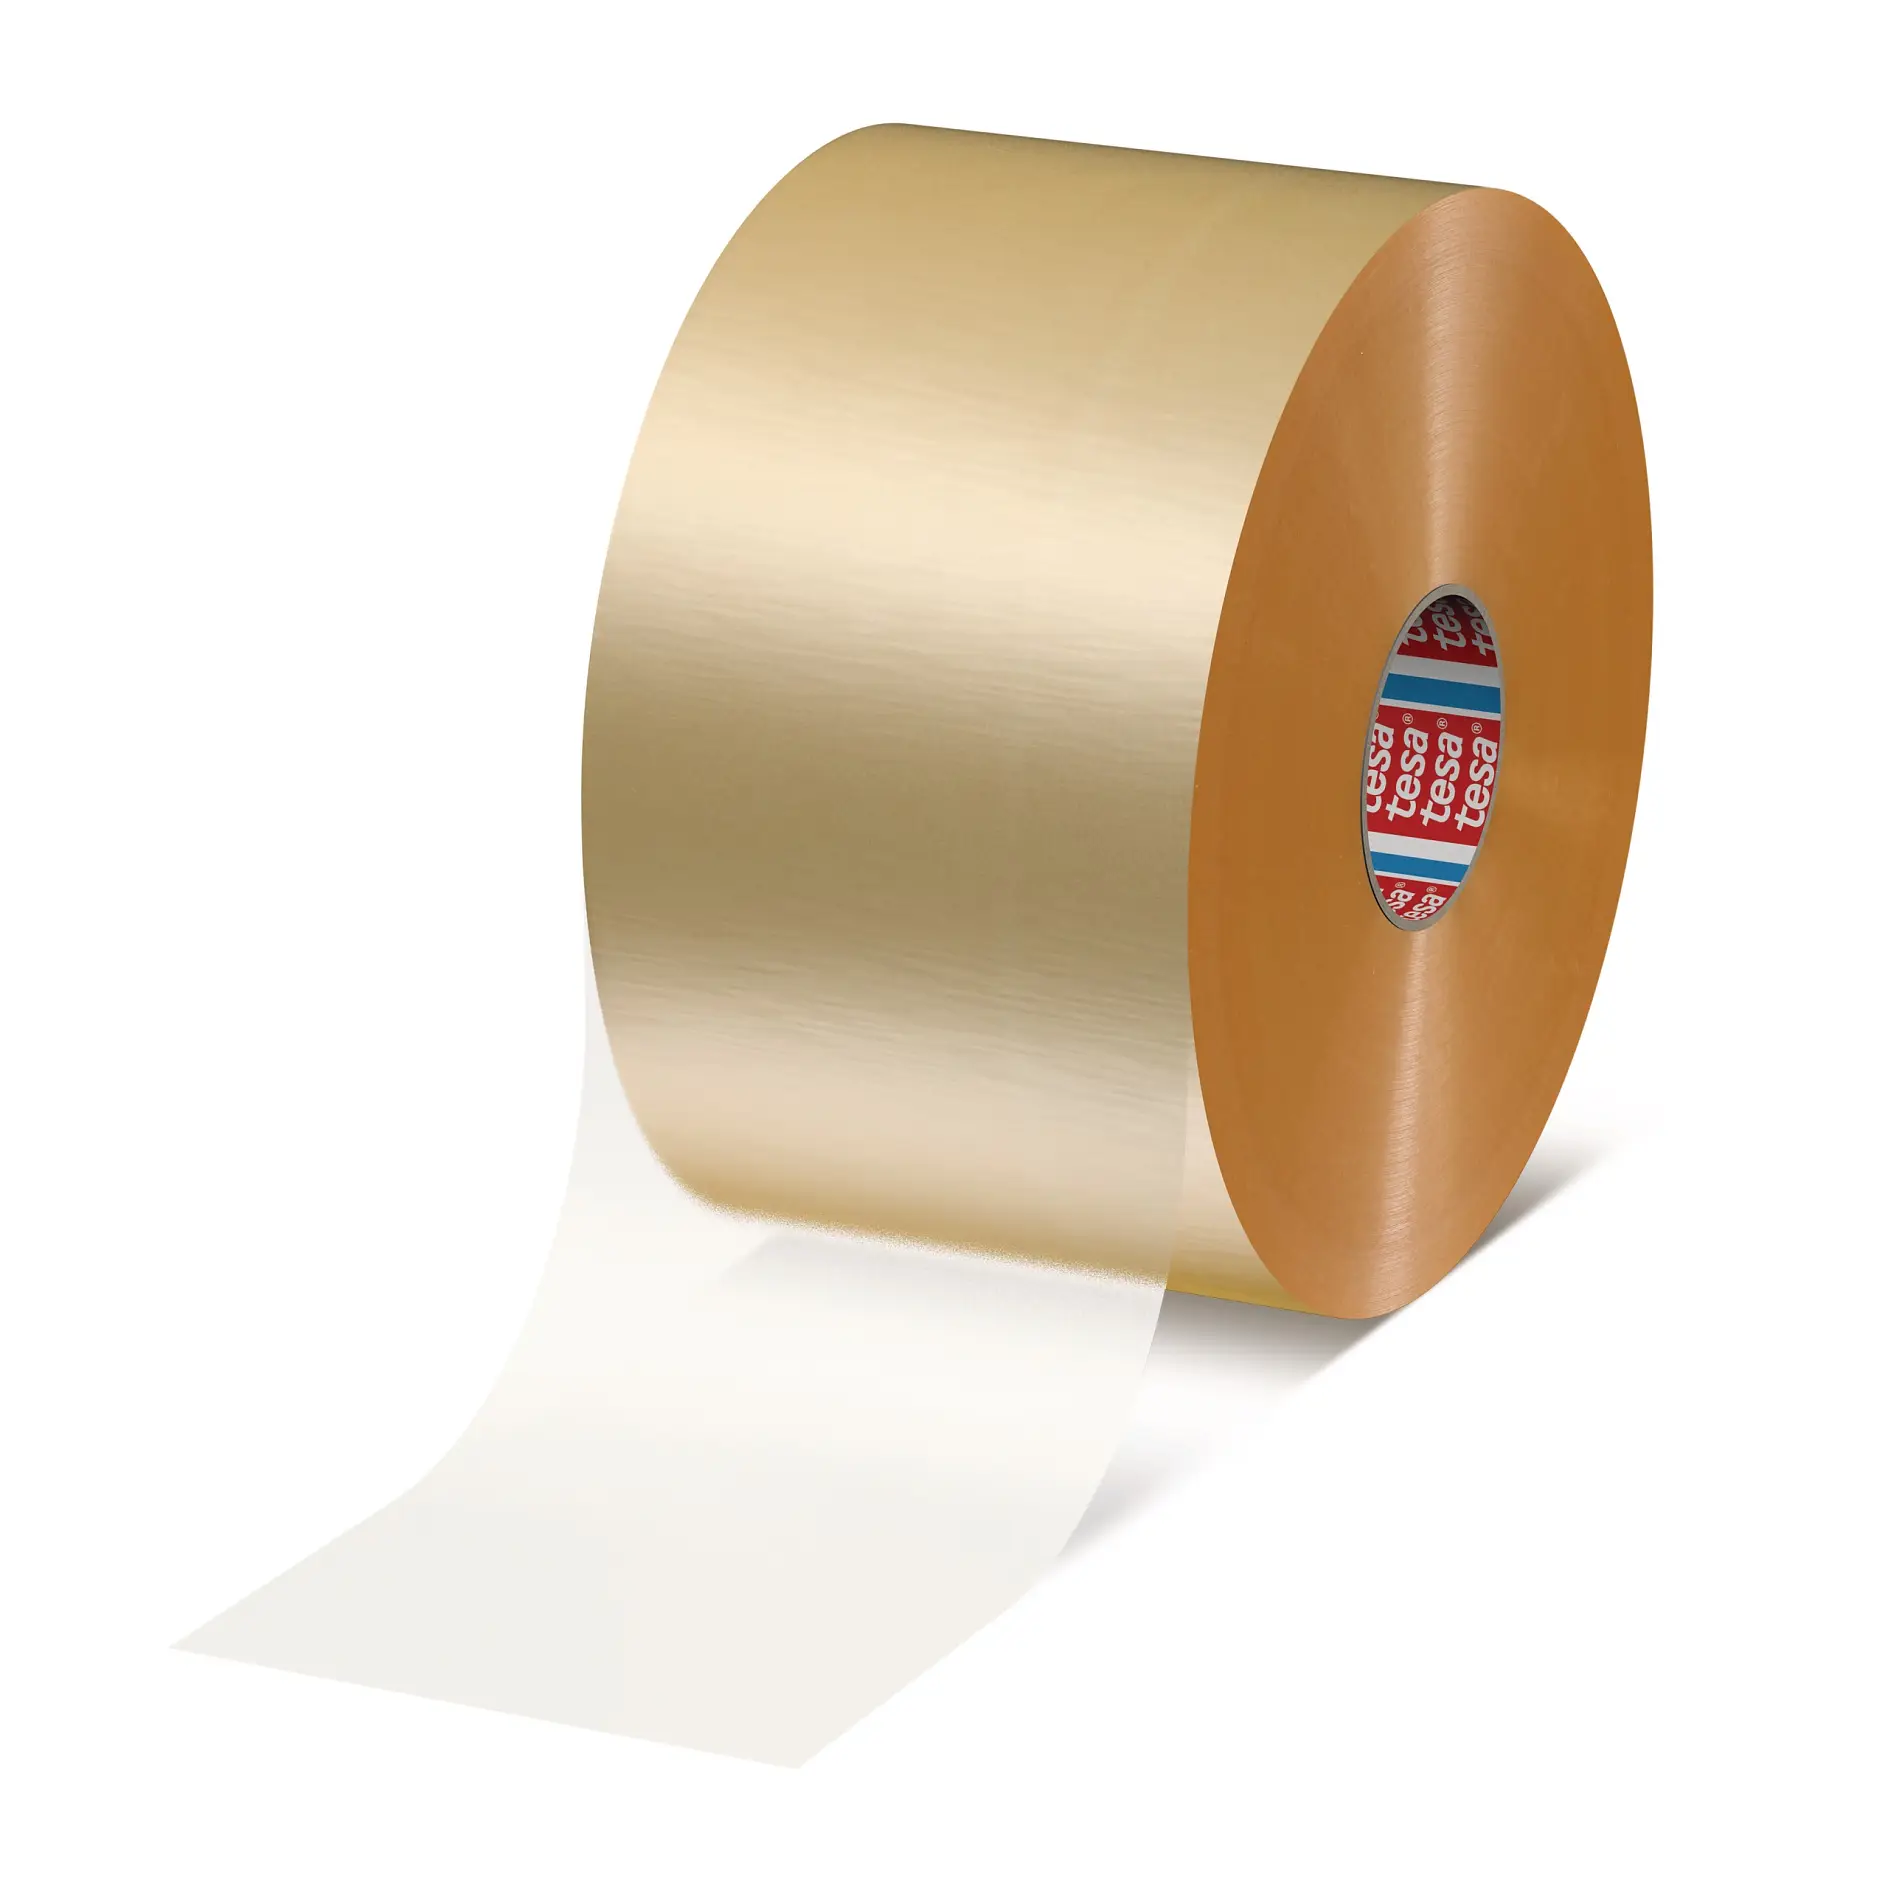 tesa-60028-printable-packaging-tape-600280000000-pr